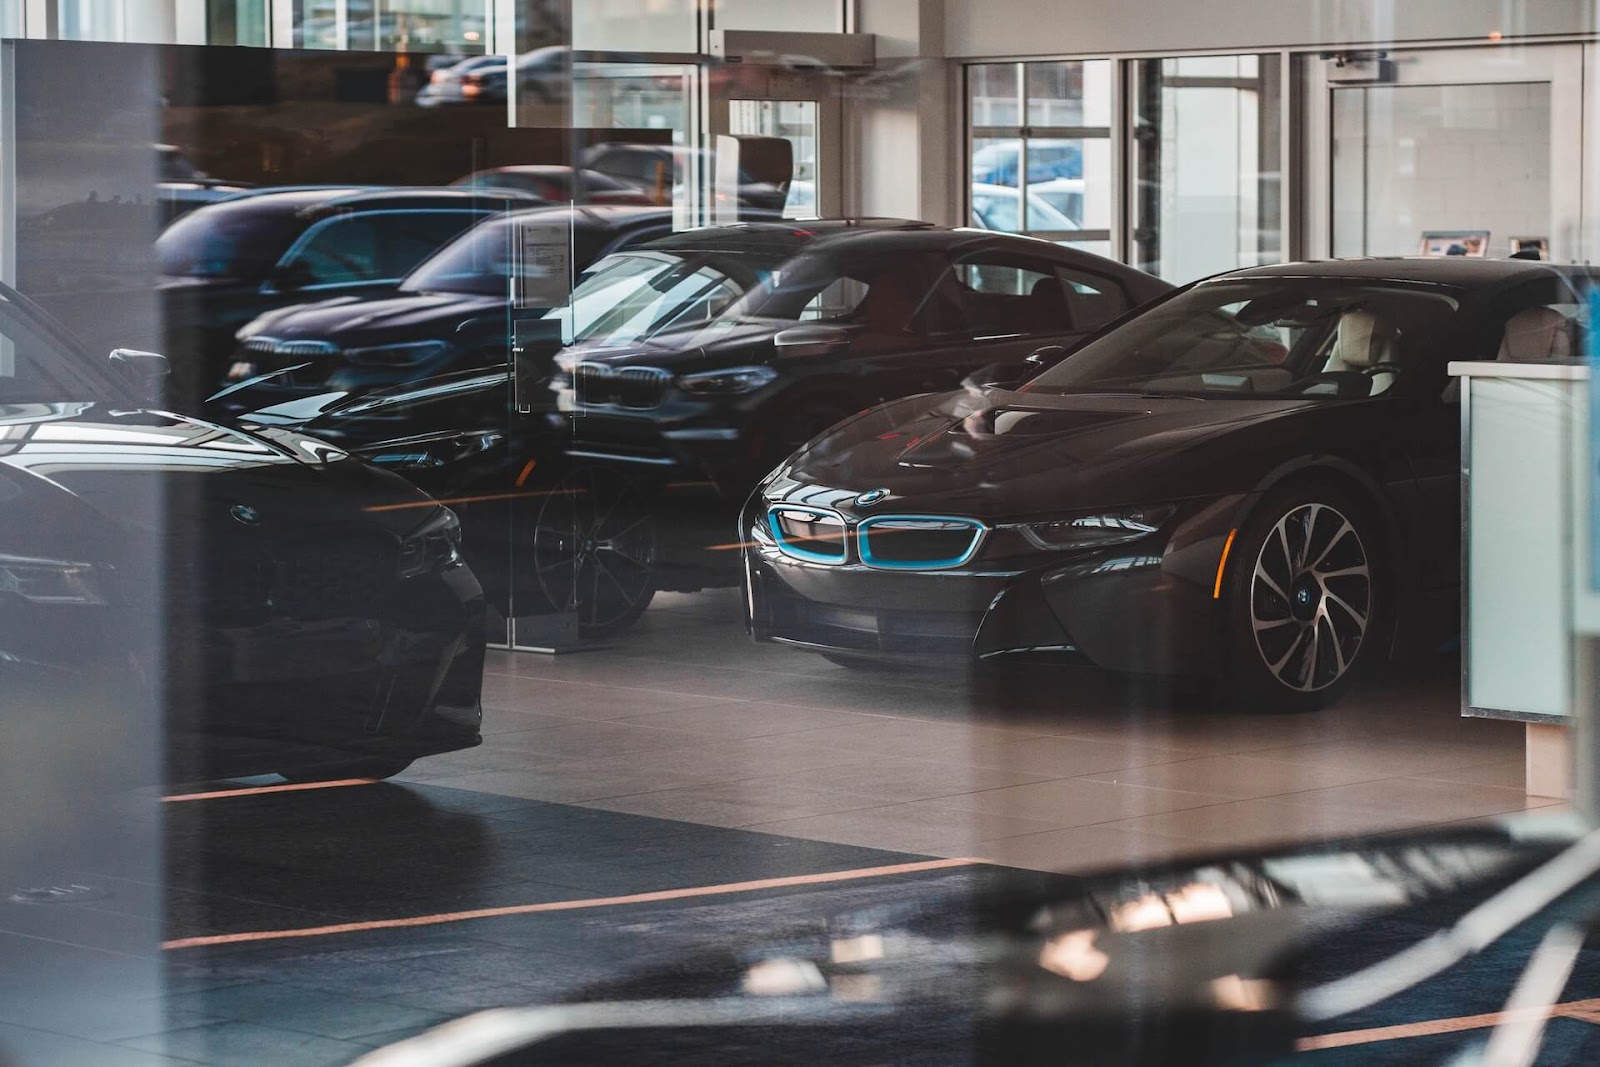 BMW sedans inside a dealership.